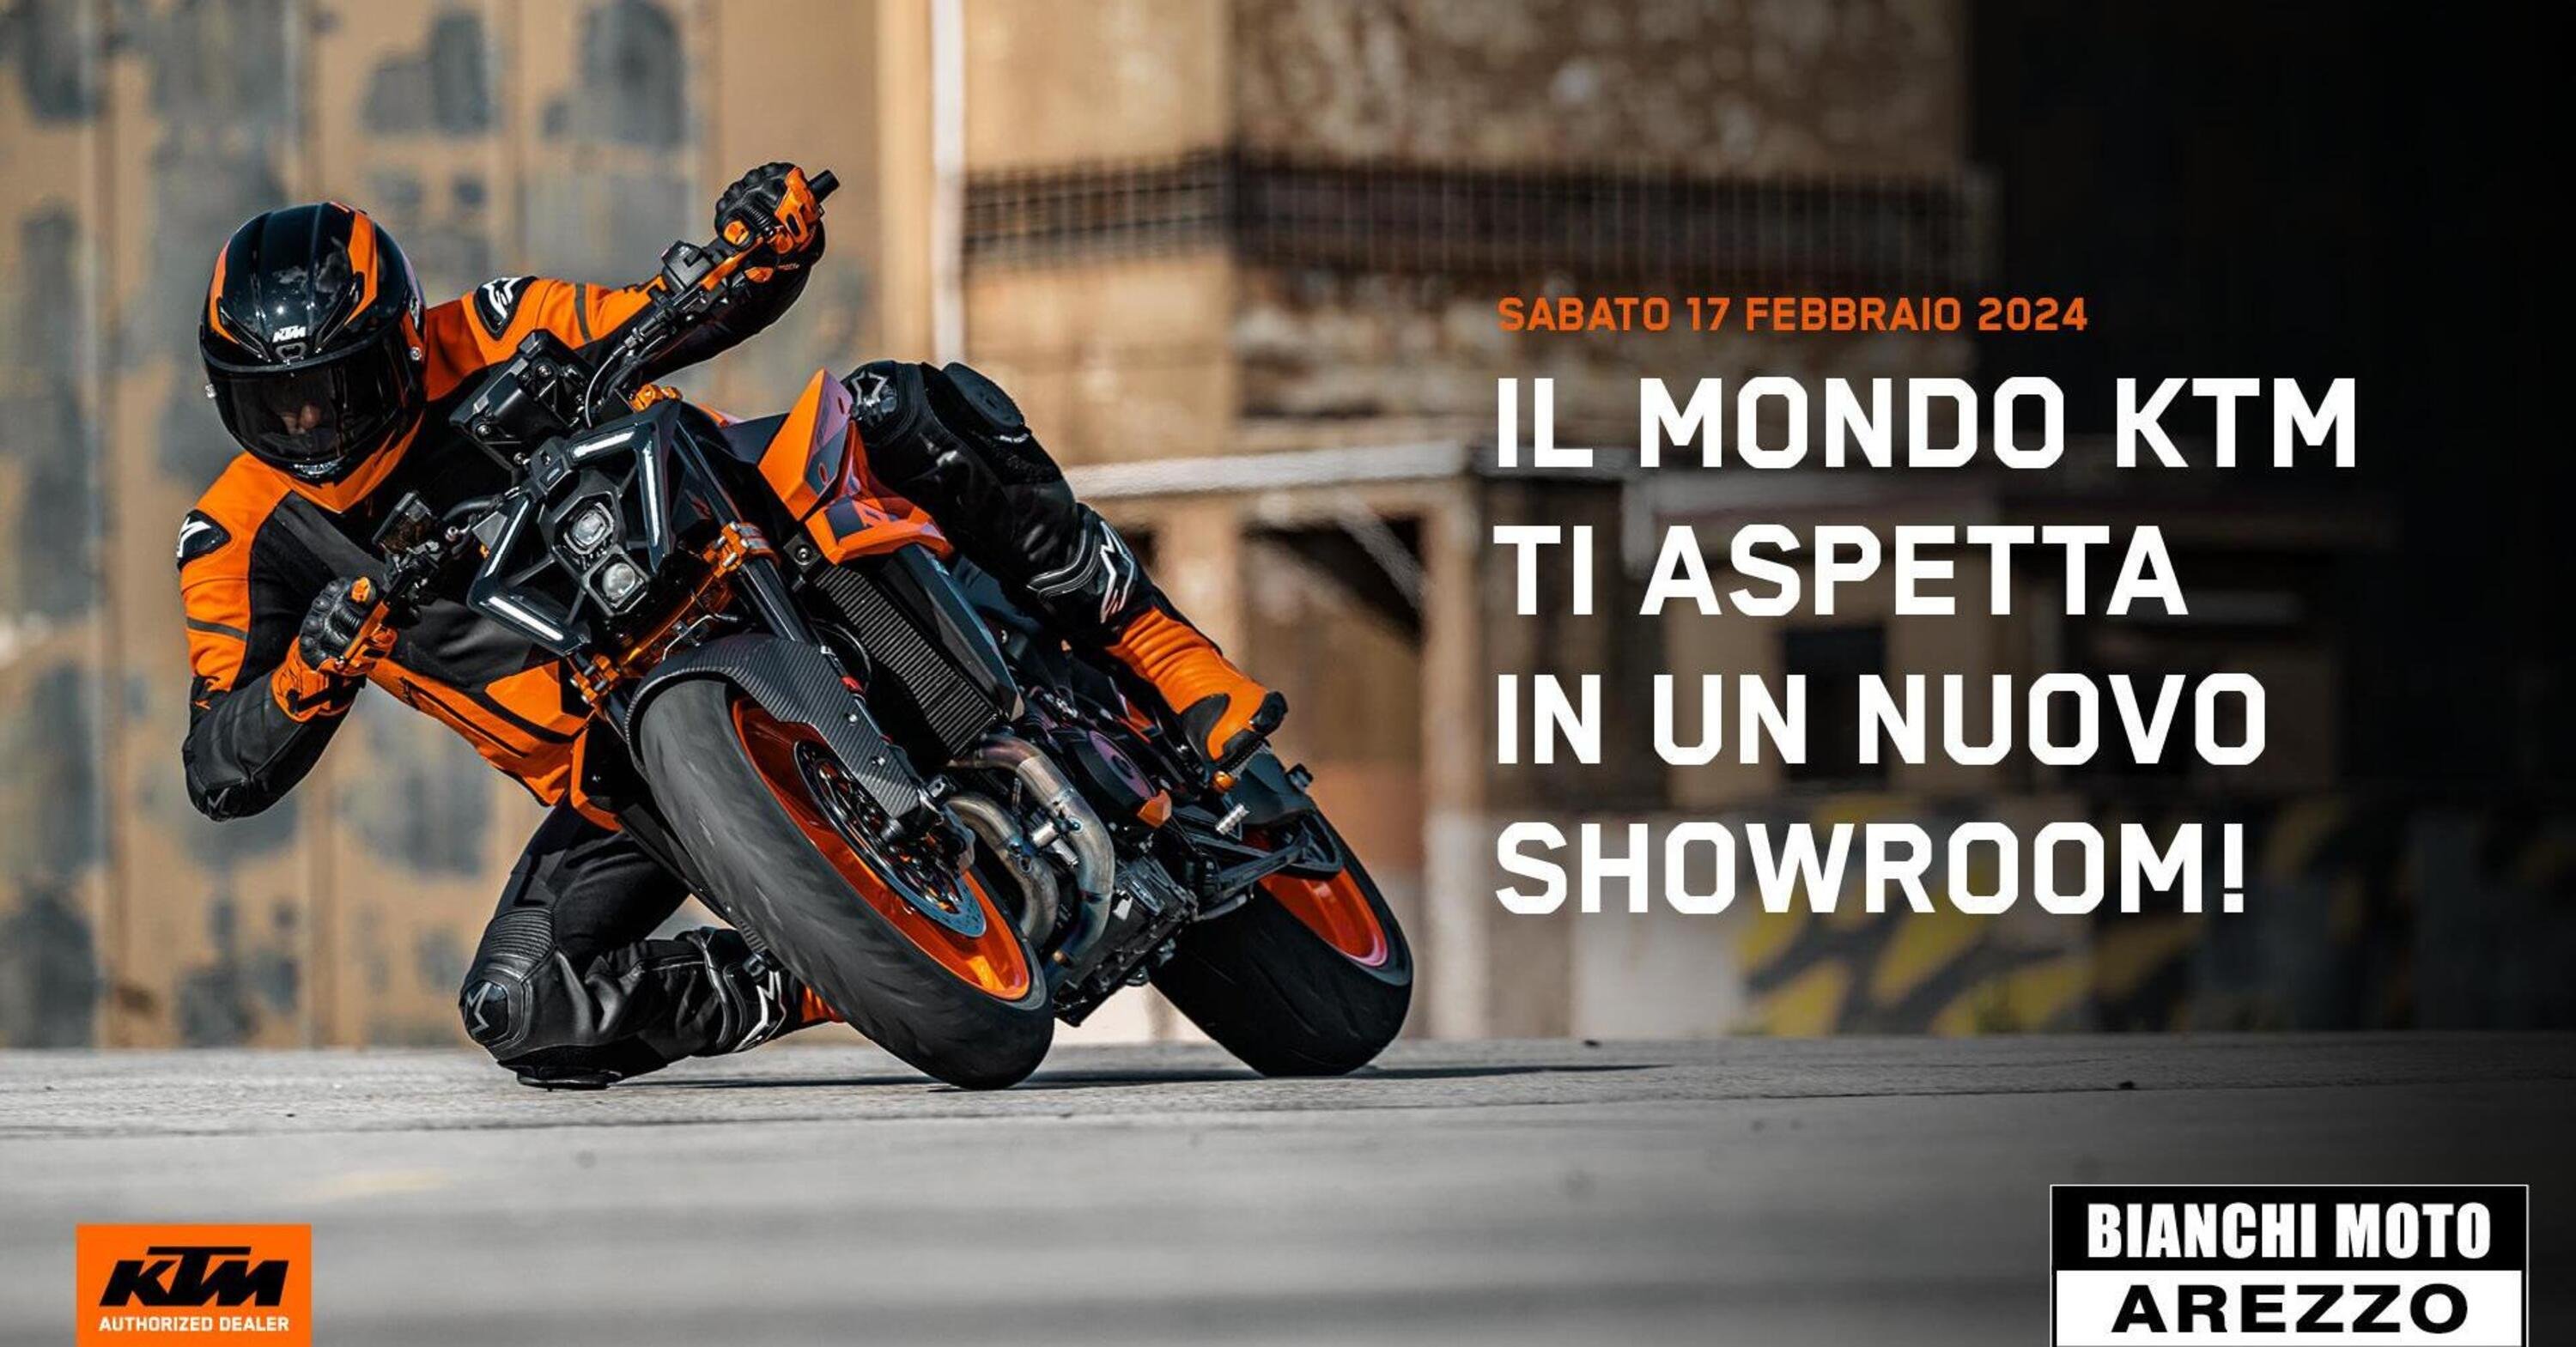  K-Arezzo by Bianchi Moto: apre sabato 17 febbraio il nuovo salone KTM ad Arezzo